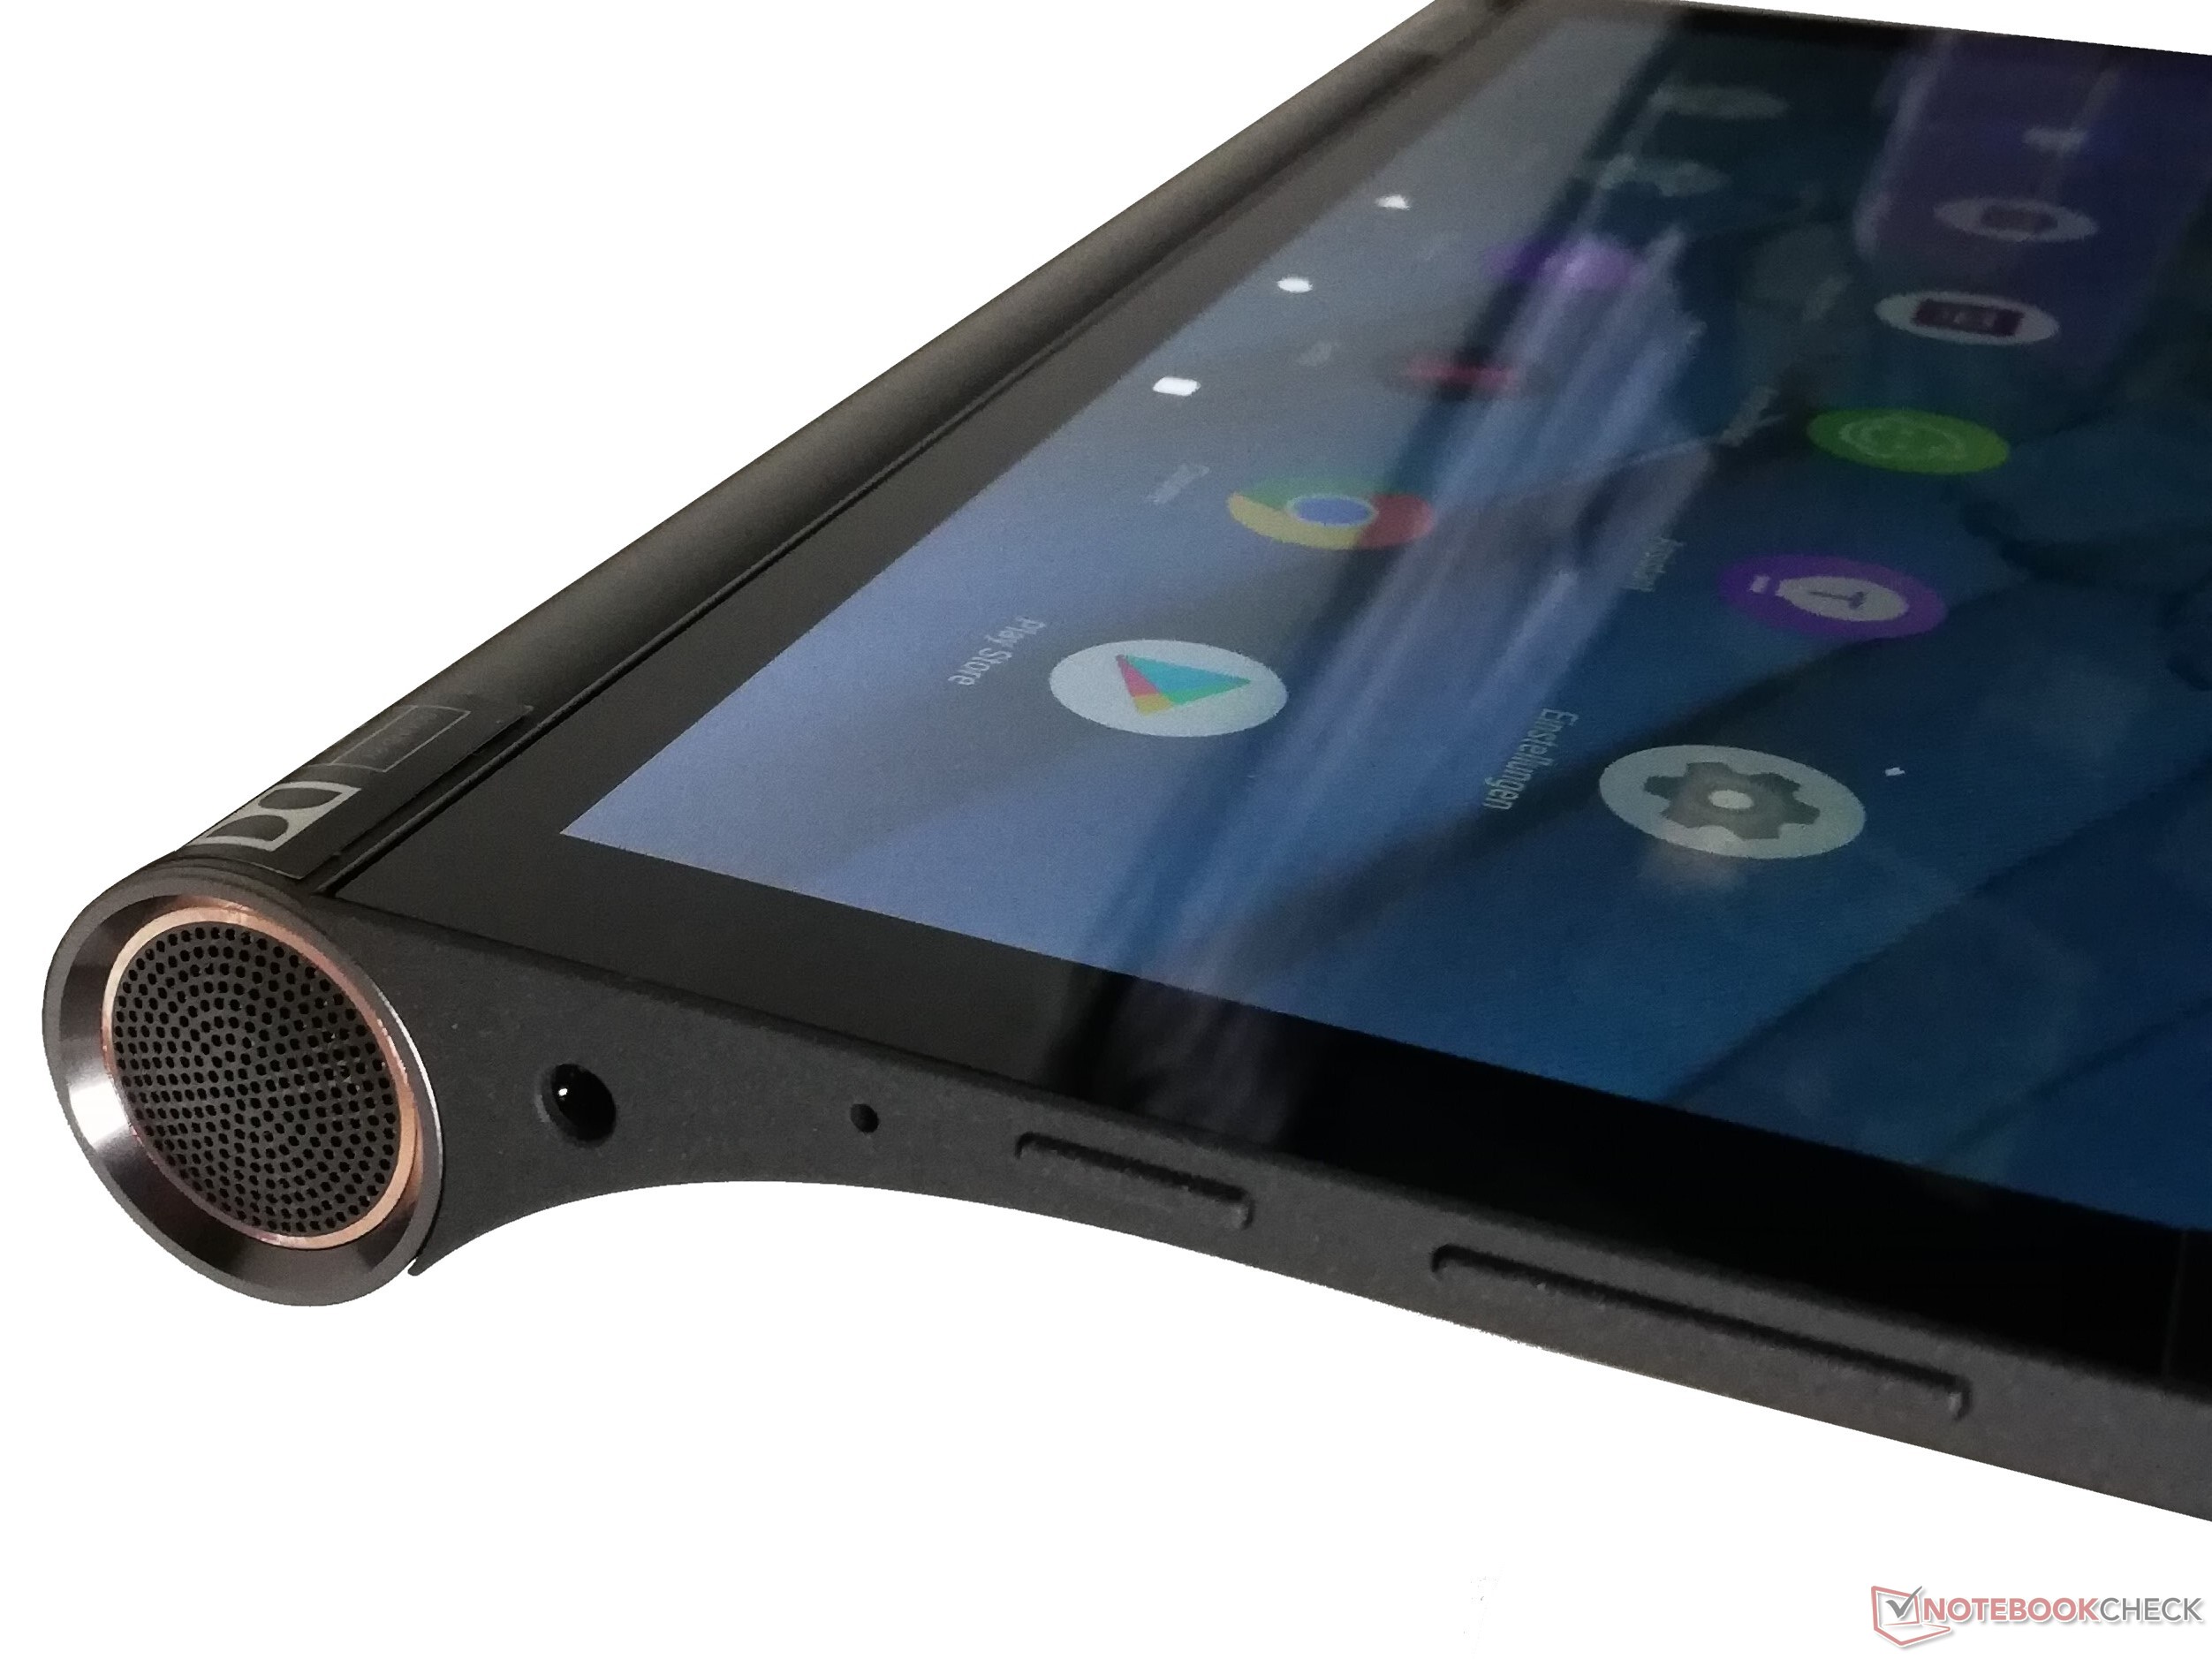 Lenovo Smart Tab YT-X705F: una tableta para toda la familia